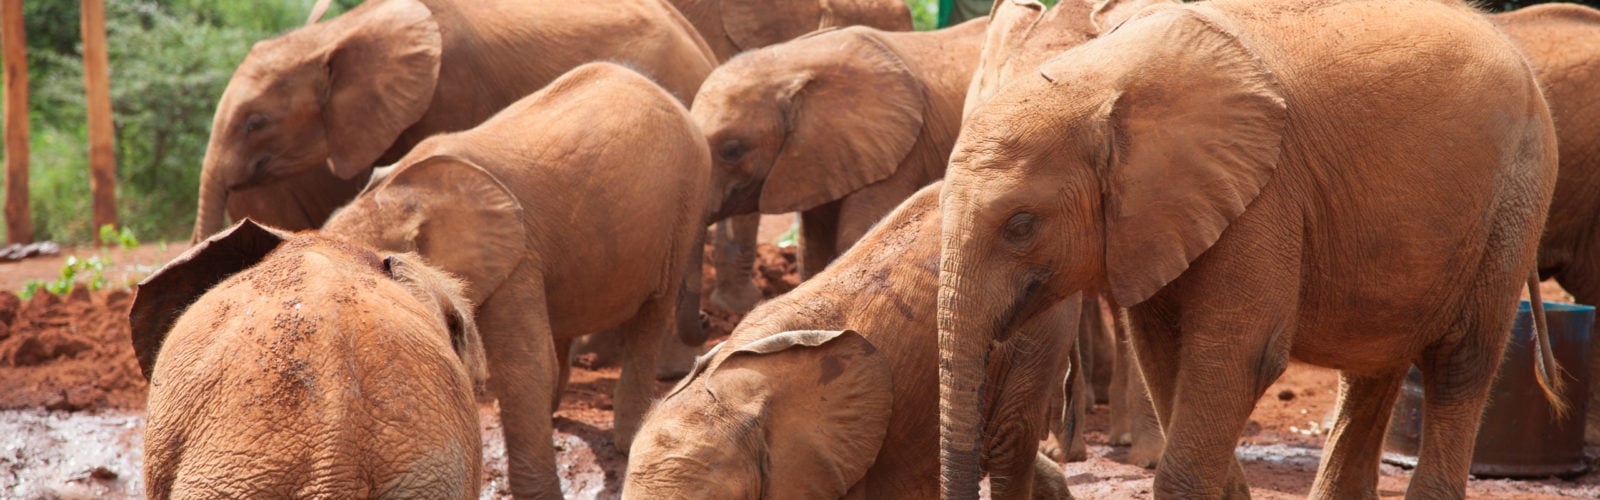 david-sheldrick-elephants-wildlife-trust-kenya